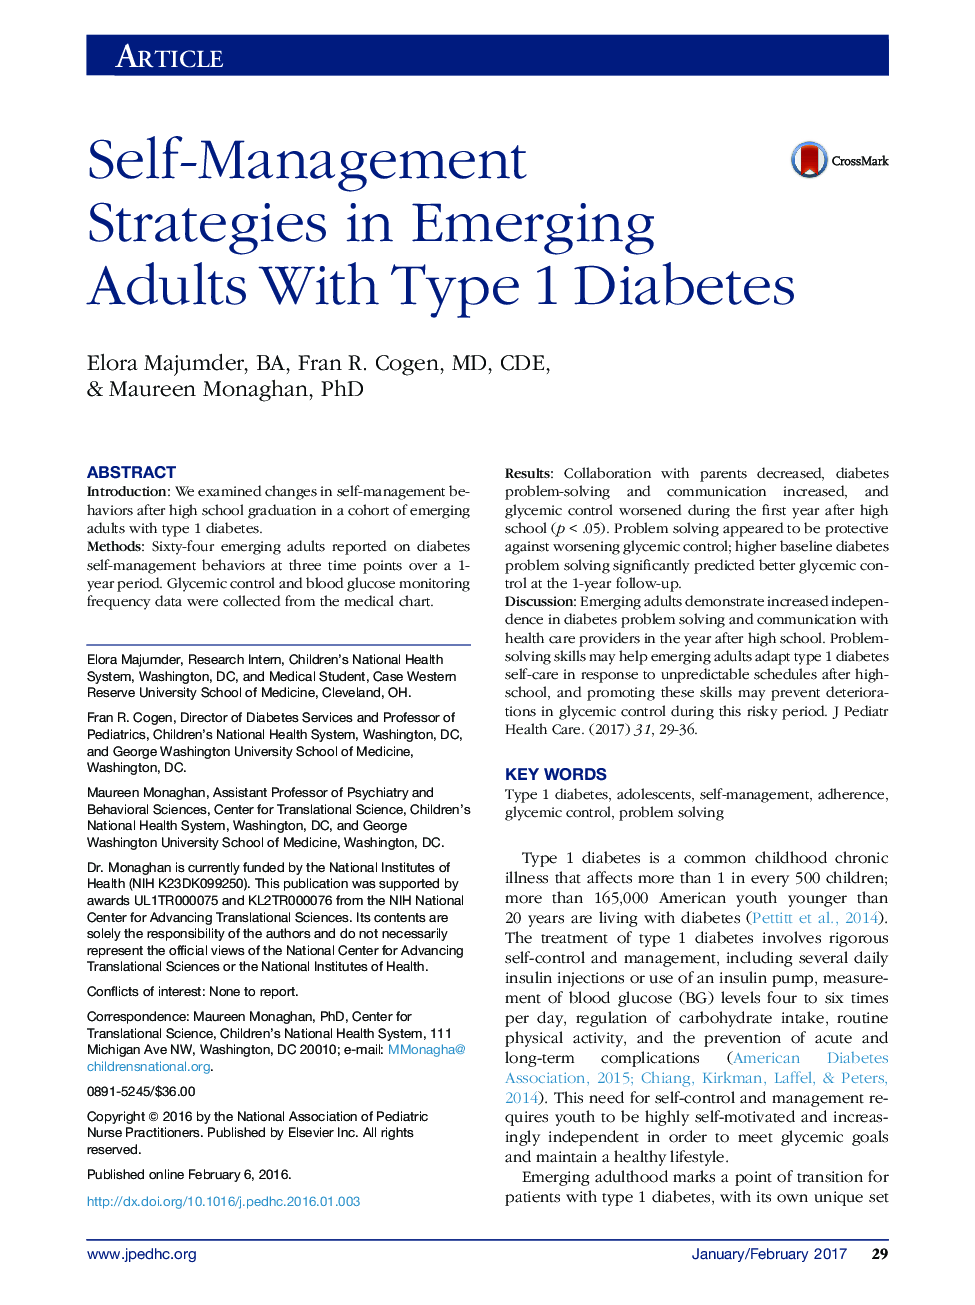 استراتژی های خودمراقبتی در بزرگسالان مبتلا به دیابت نوع 1 